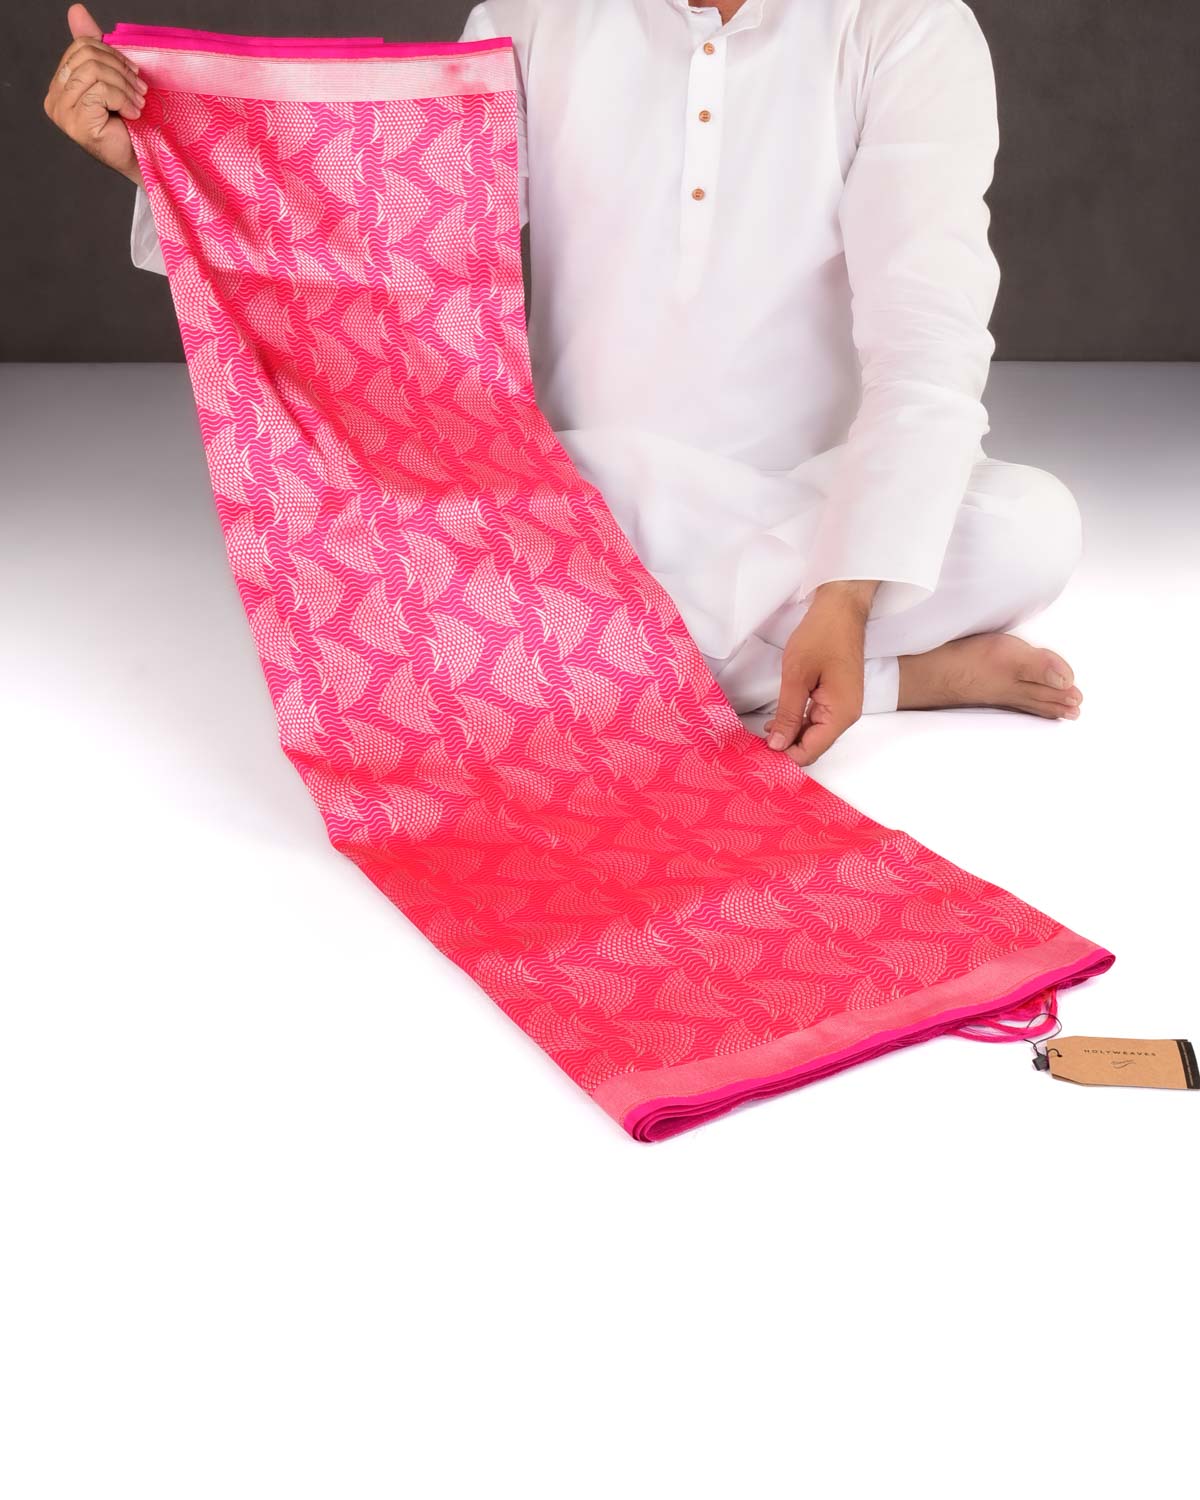 Shot Red-Pink Banarasi Gold Zari "Pisces" Brocade Handwoven Katan Silk Saree-HolyWeaves